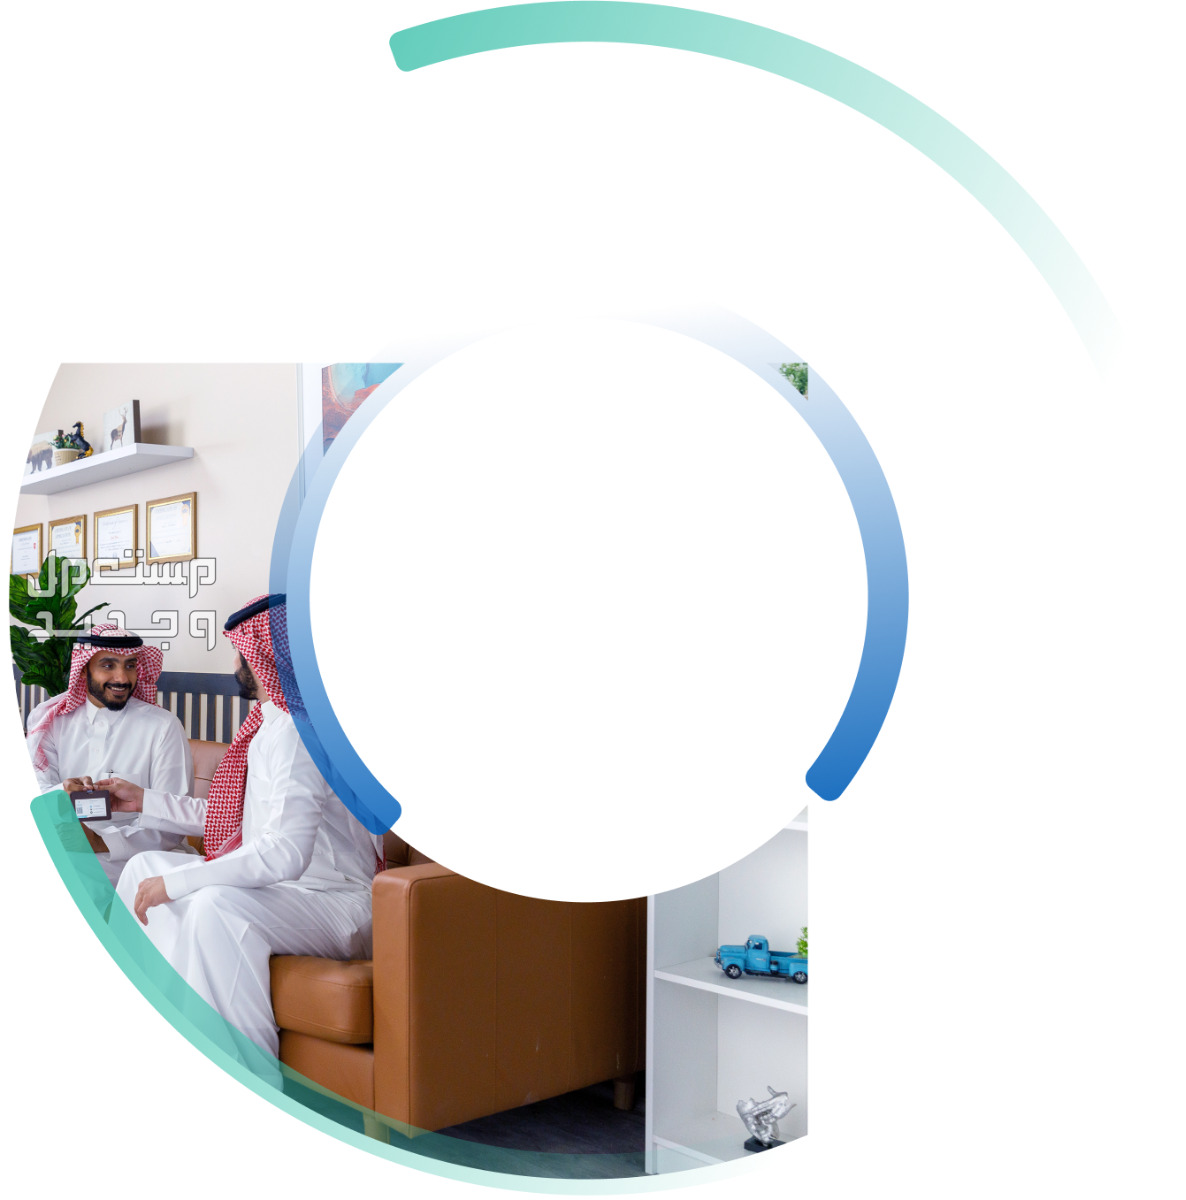 مجاني ومدى الحياة «التأمين الطبي الوطني الشامل».. كل ما تريد معرفته بالانواع والمميزات في جيبوتي التأمين الطبي الوطني الشامل في السعودية